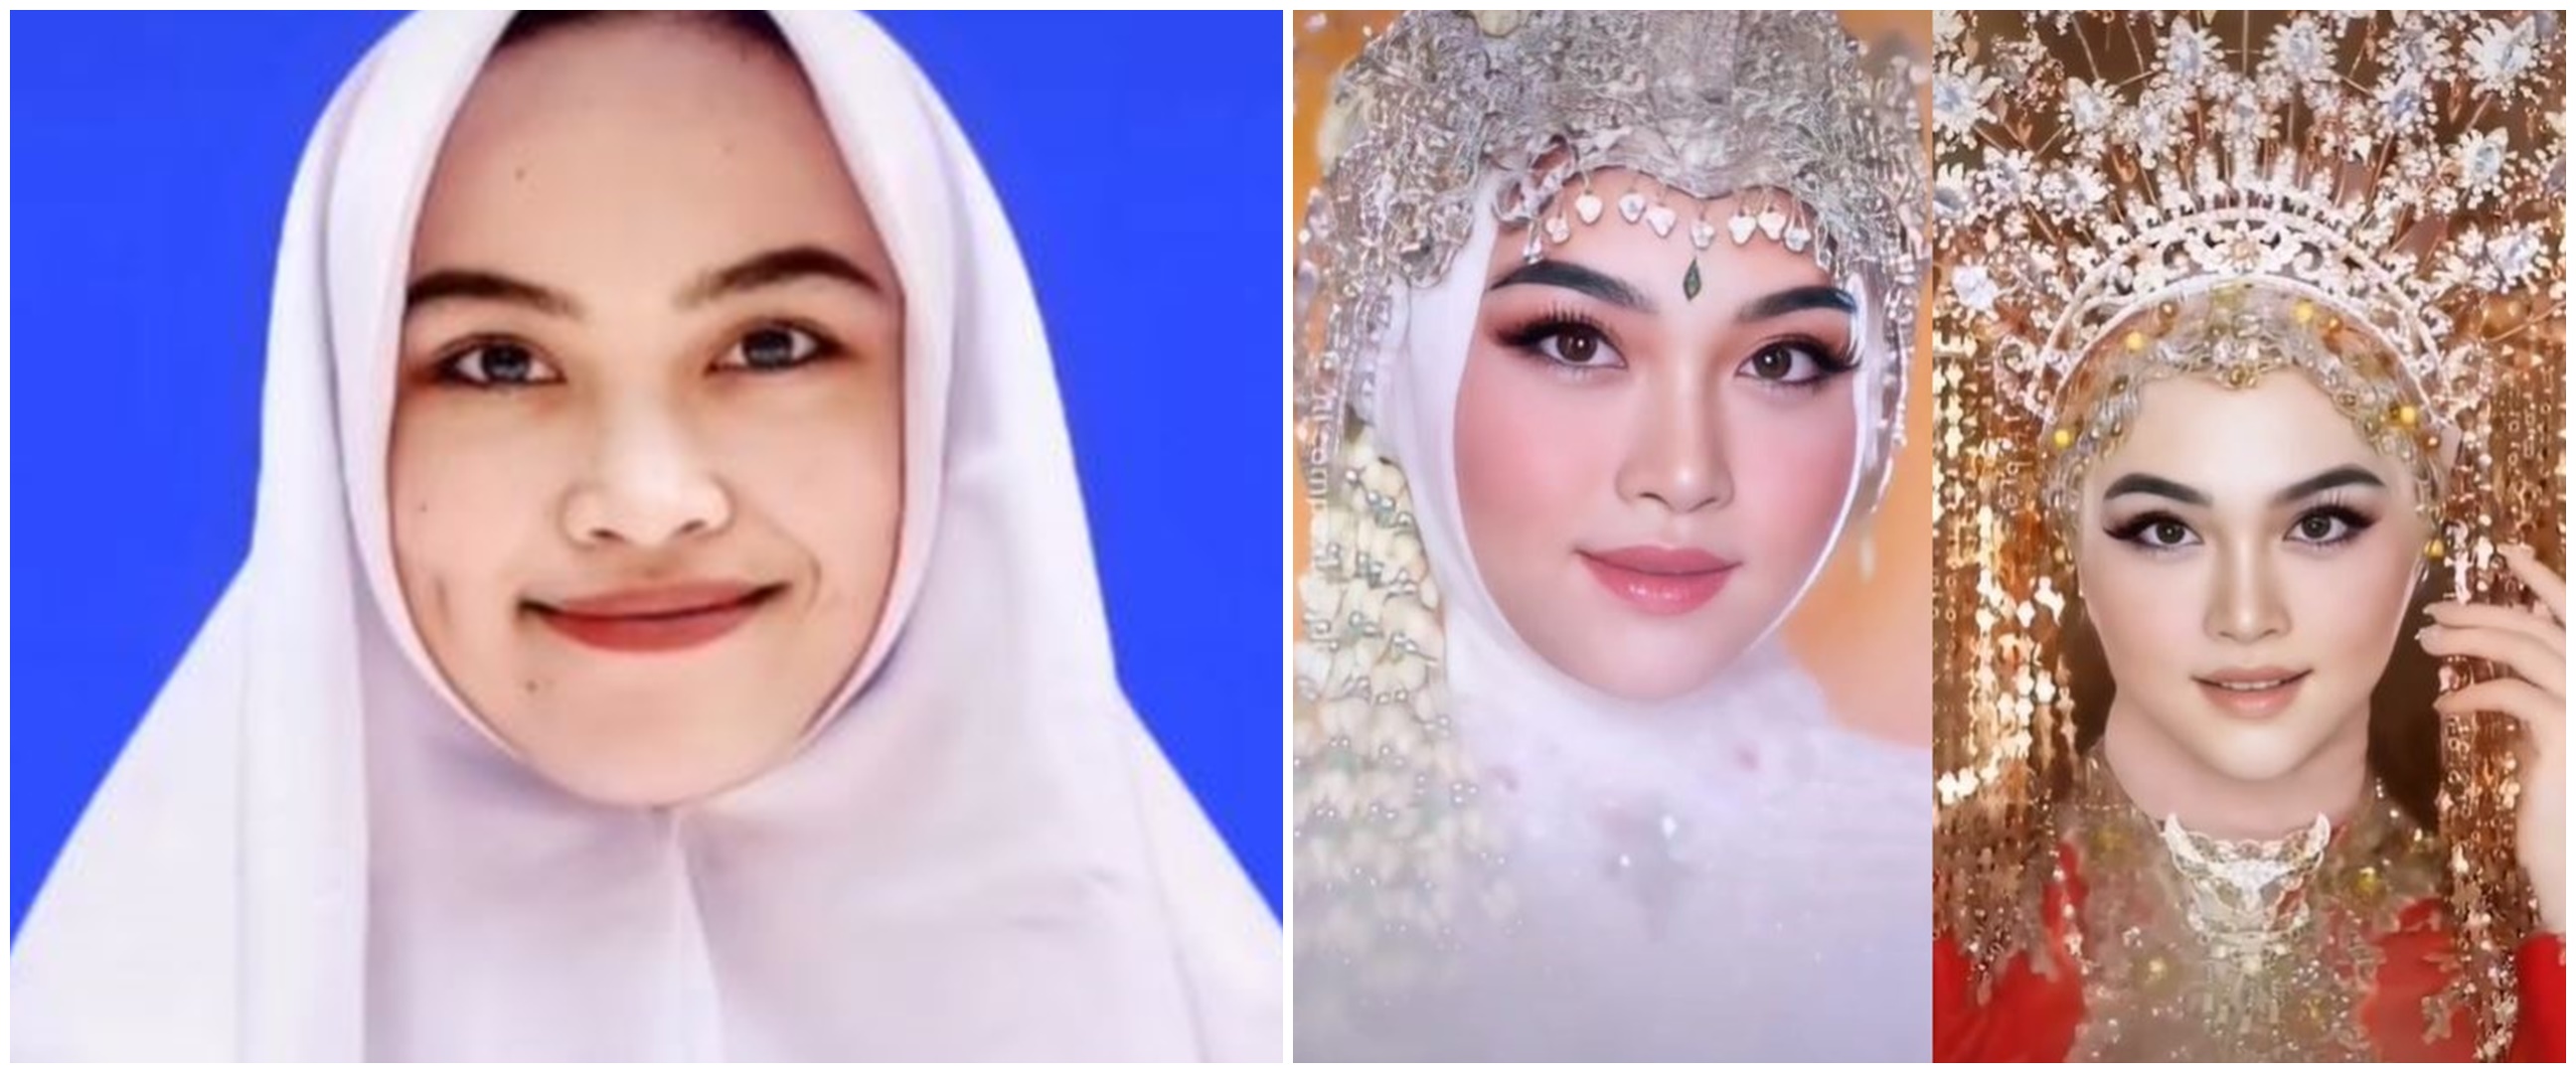 Viral wanita pamer makeup pengantin pakai aplikasi, warganet tertipu